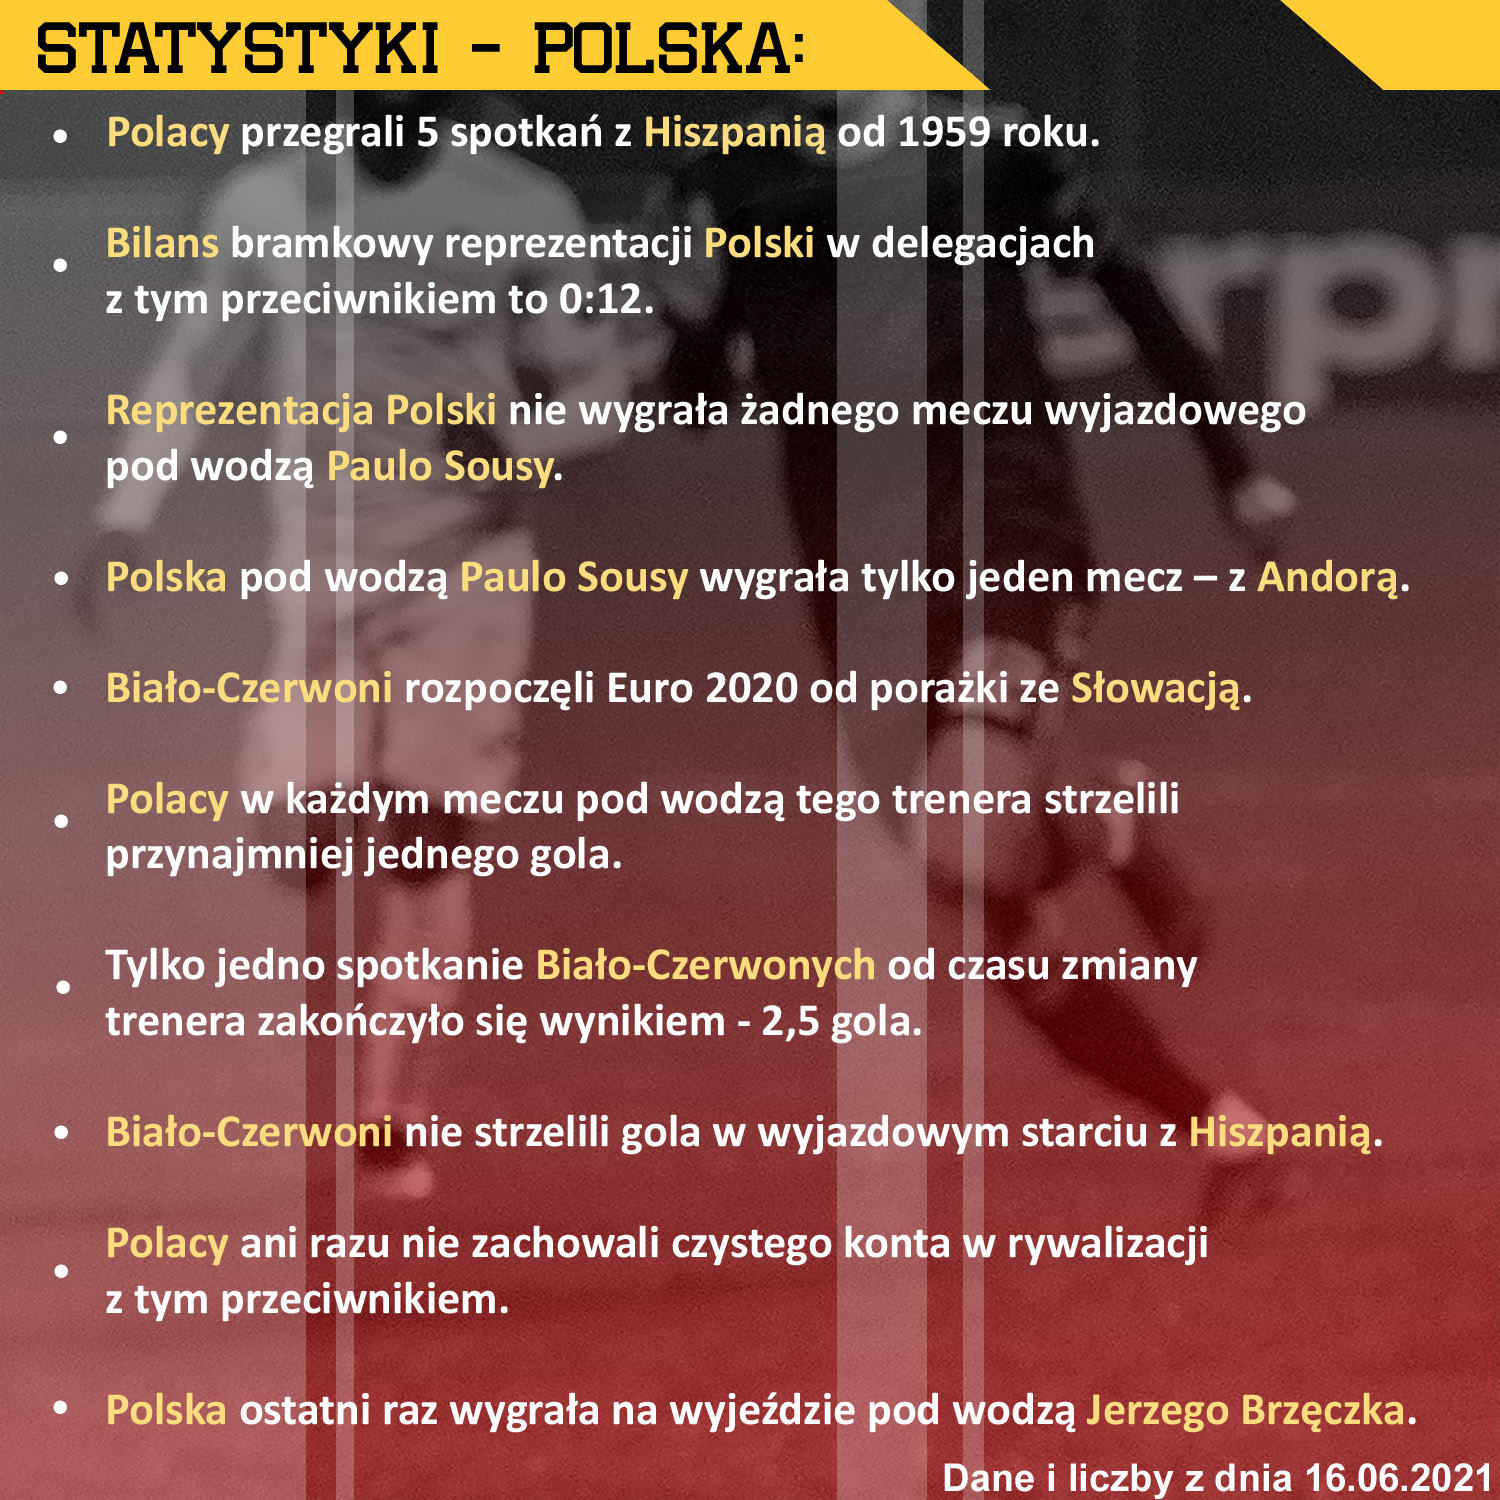 polska statystyki